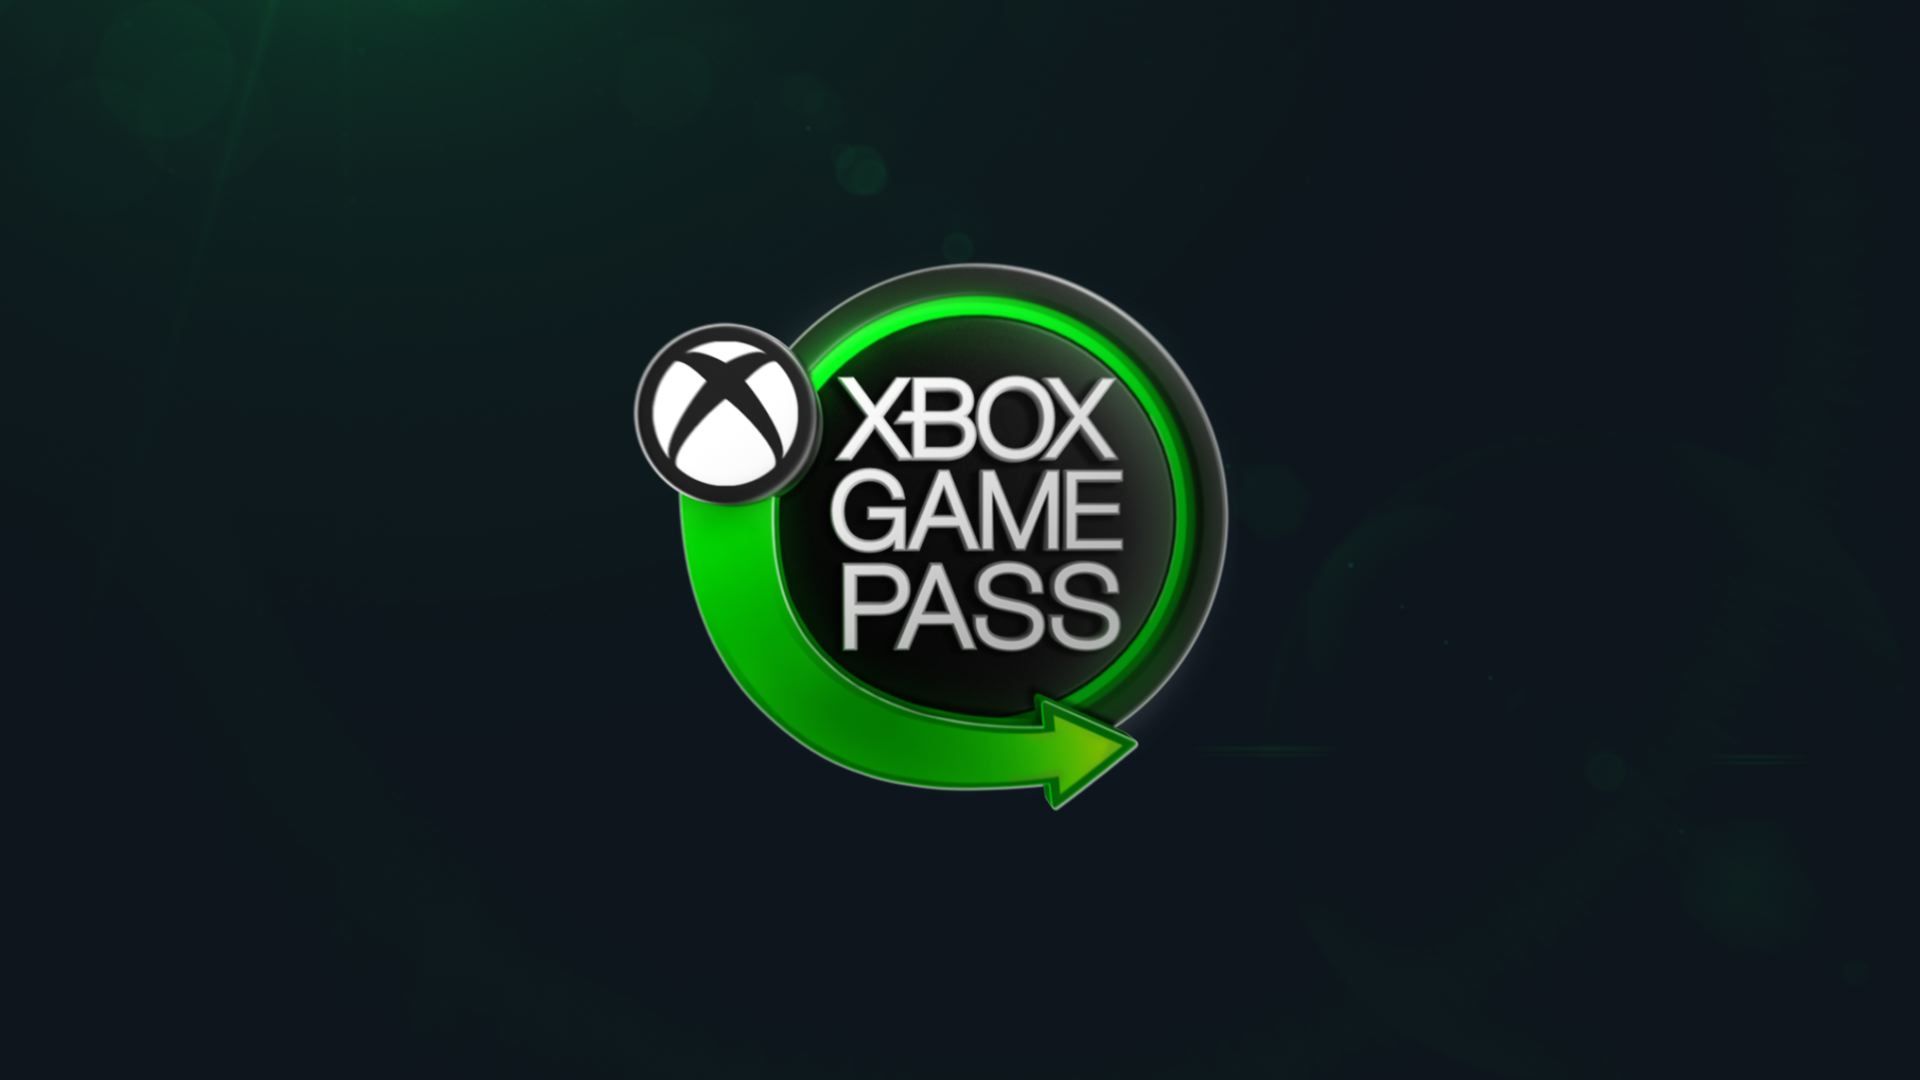 Seriuos Sam Coming to Xbox Game Pass 